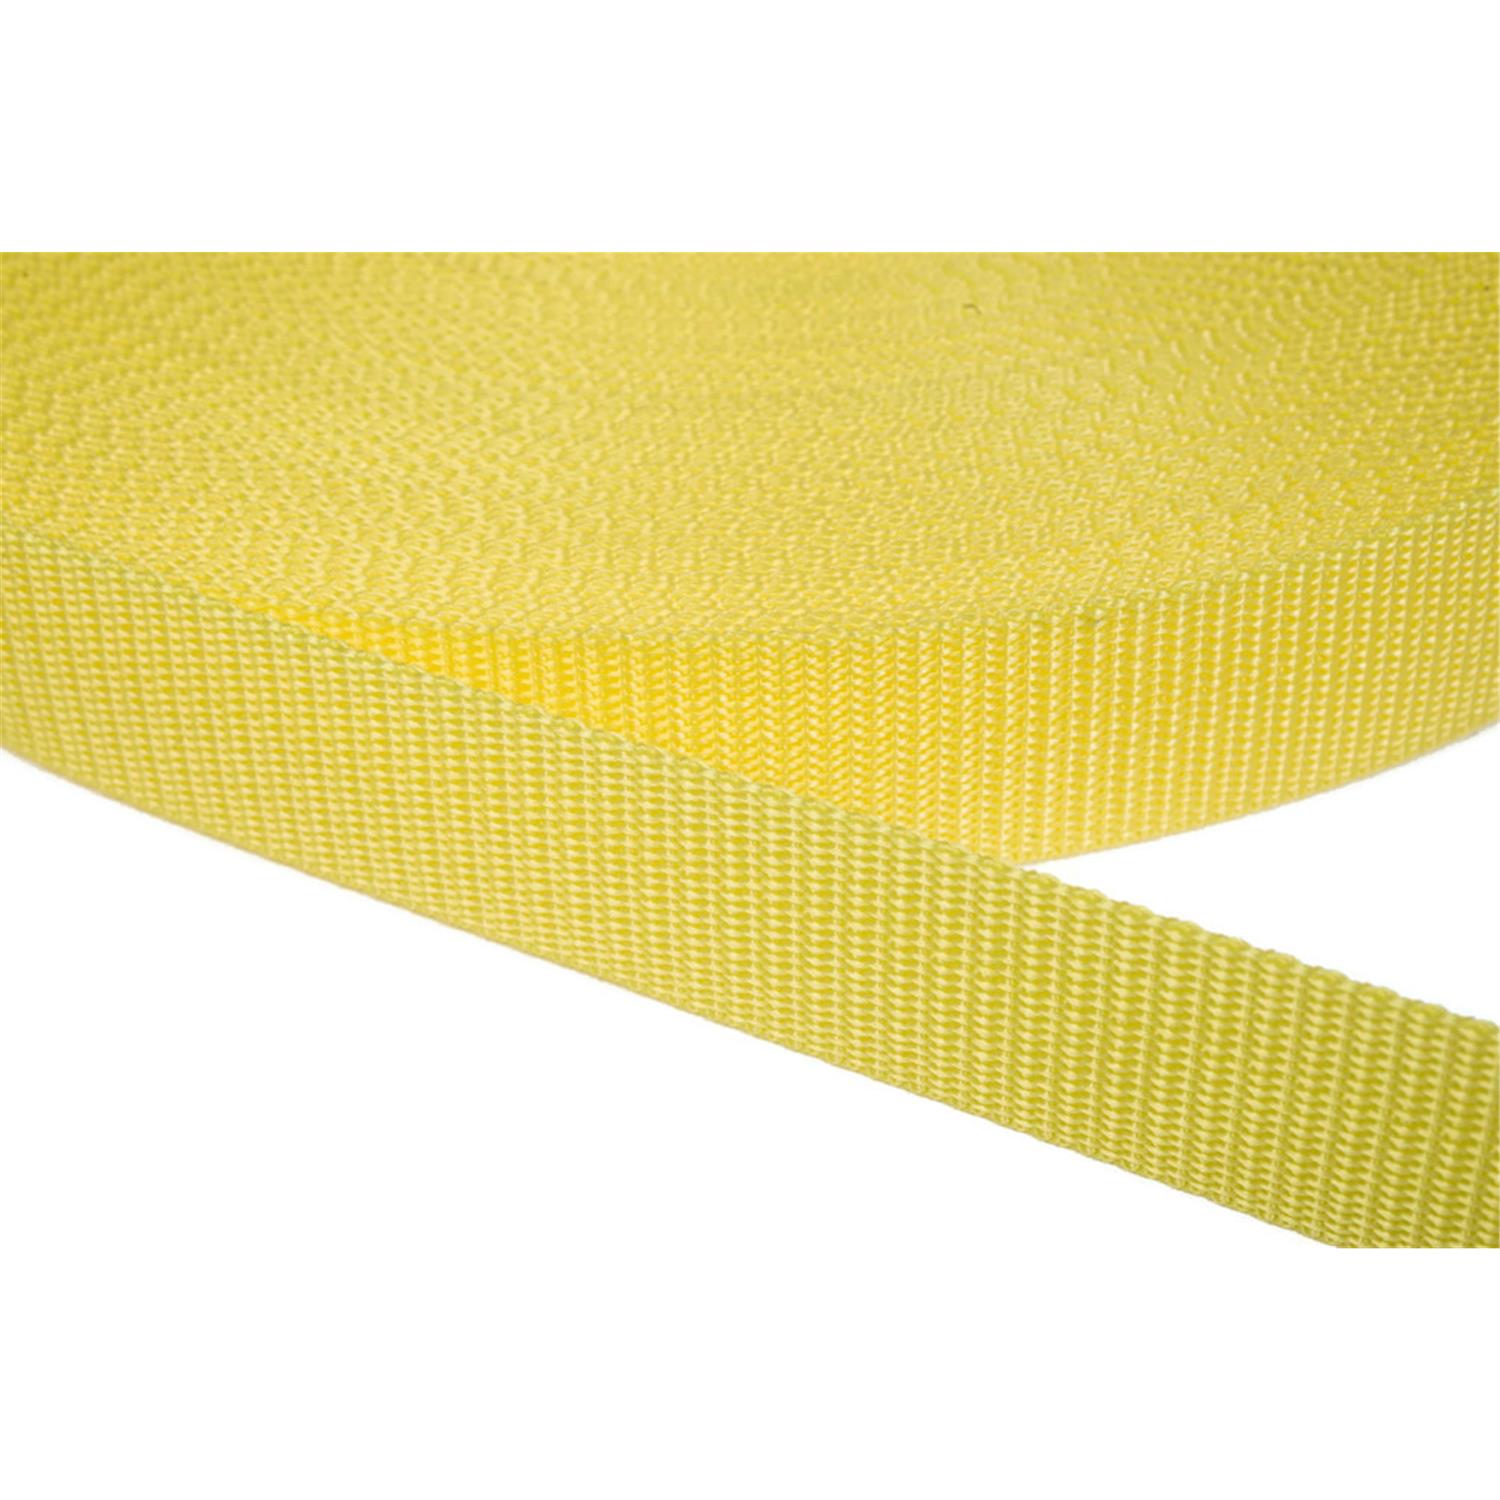 Gurtband 15mm breit aus Polypropylen in 41 Farben 09 - zitronengelb 12 Meter